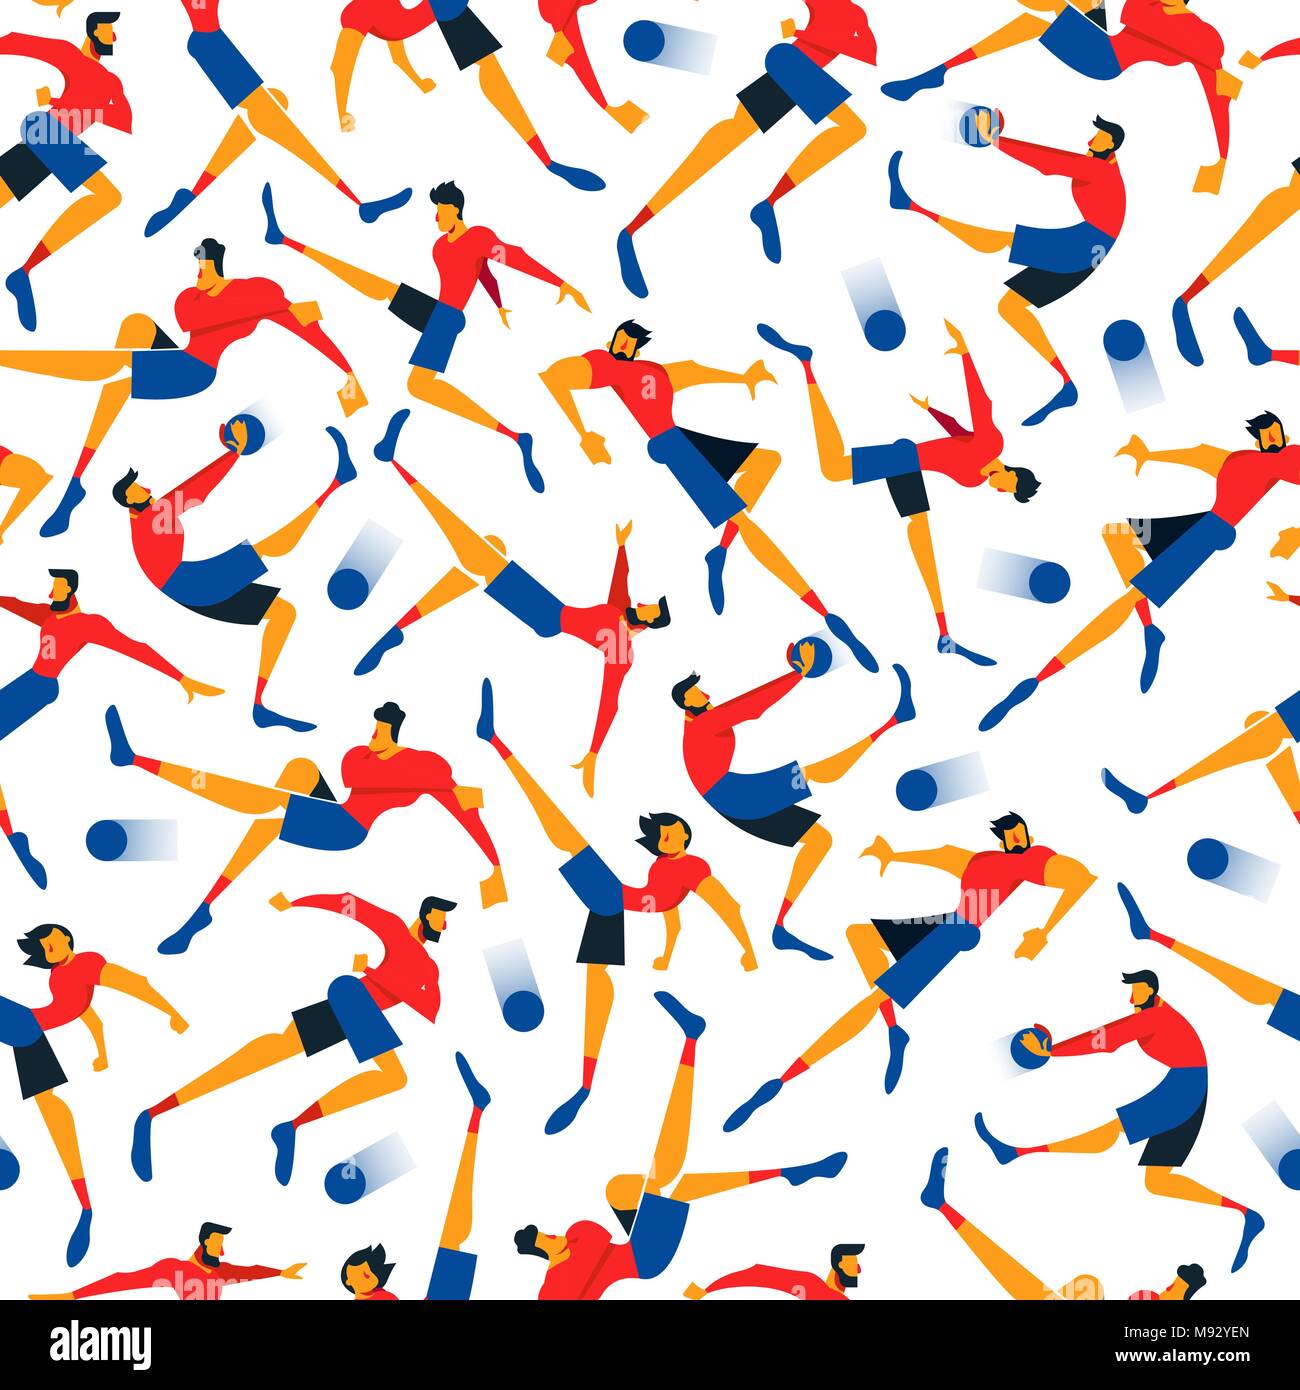 Giocatore di calcio seamless pattern con uomini di sport in athletic pone. Gioco di sport lo sfondo dell'illustrazione della squadra di calcio, di tipo piatto arte. EPS10 v Illustrazione Vettoriale